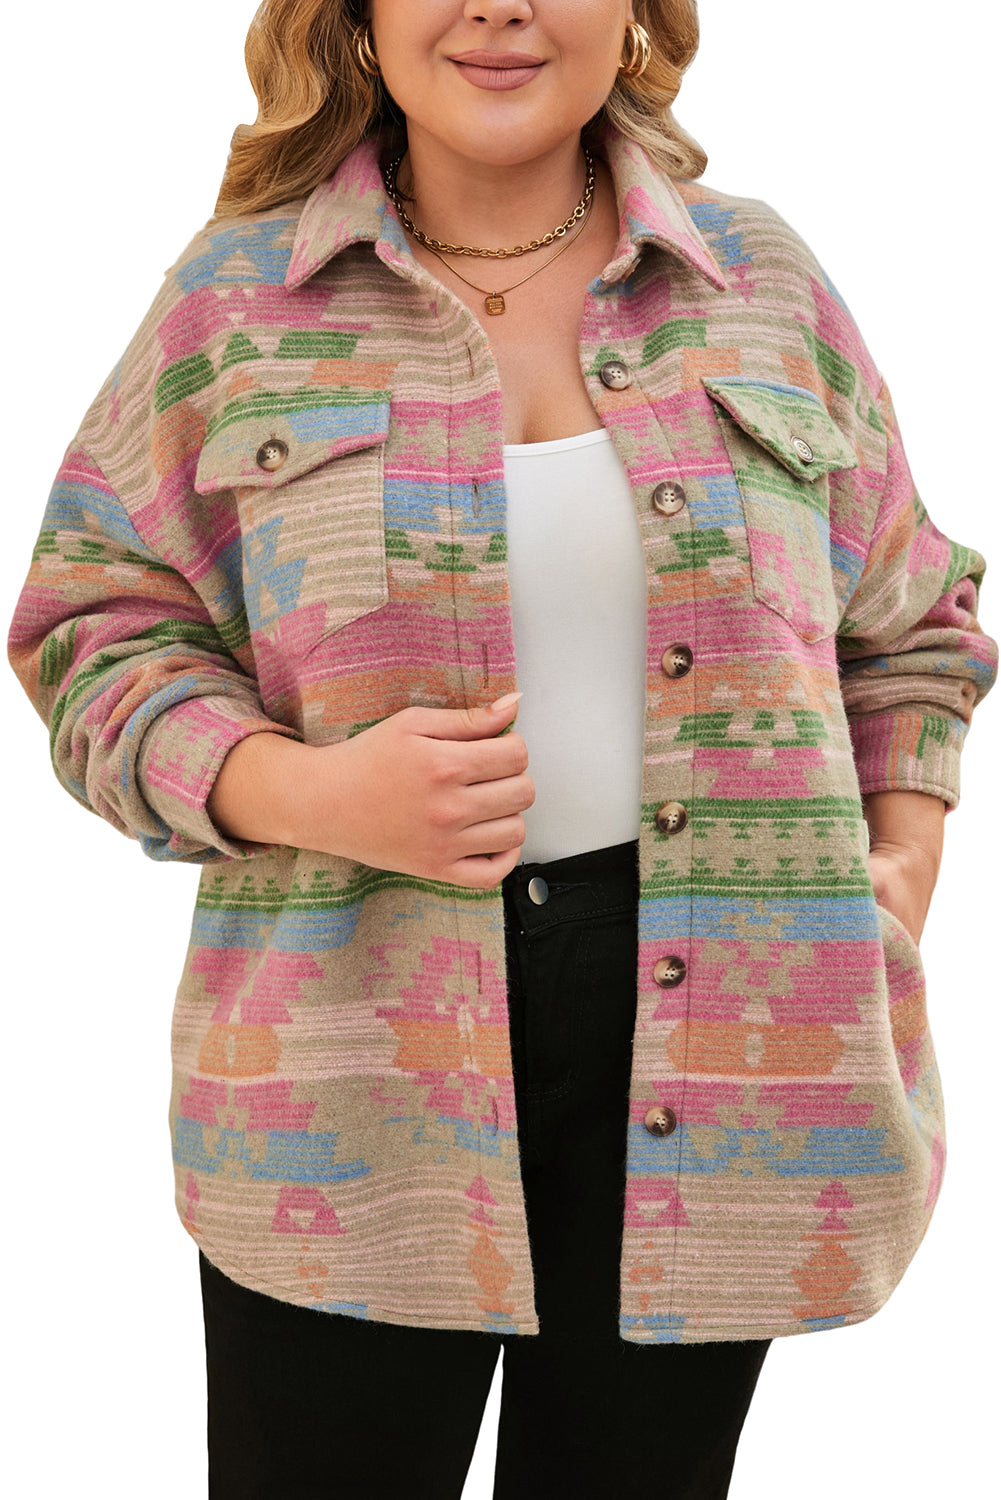 Večbarvna jakna z azteškim potiskom in velikimi žepi na zavihek